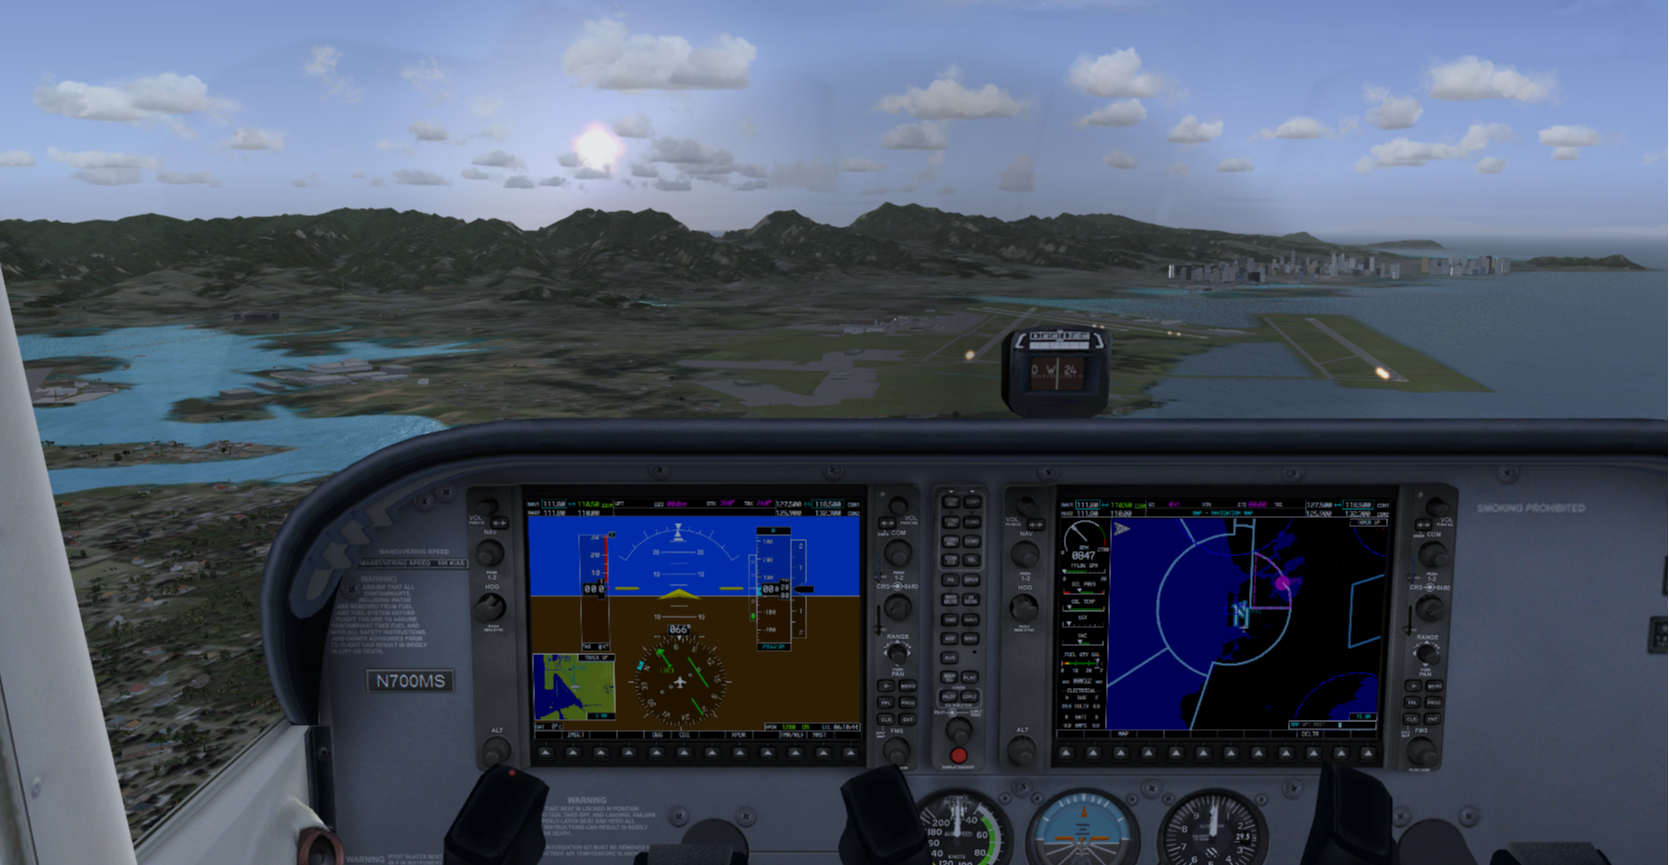 Final approach on a home flight simulator